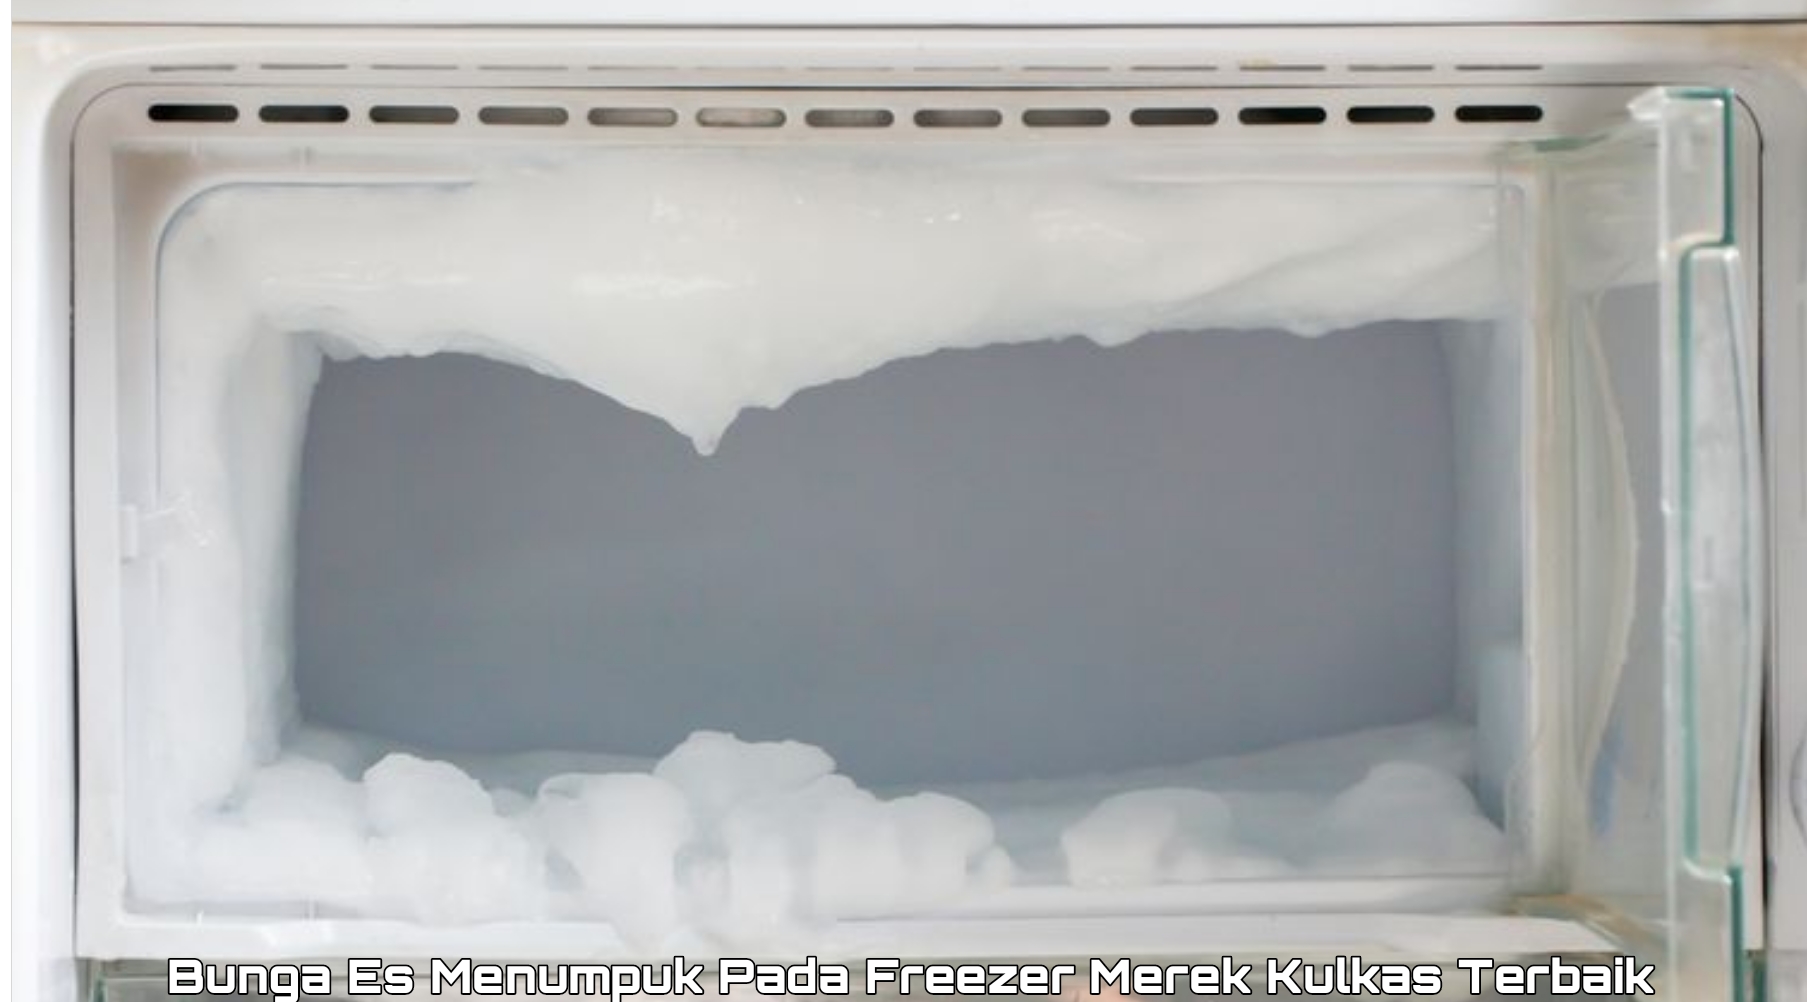 Penyebab Freezer Merek Kulkas Terbaik Mengalami Penumupukan Bunga, Simak Disini Solusinya